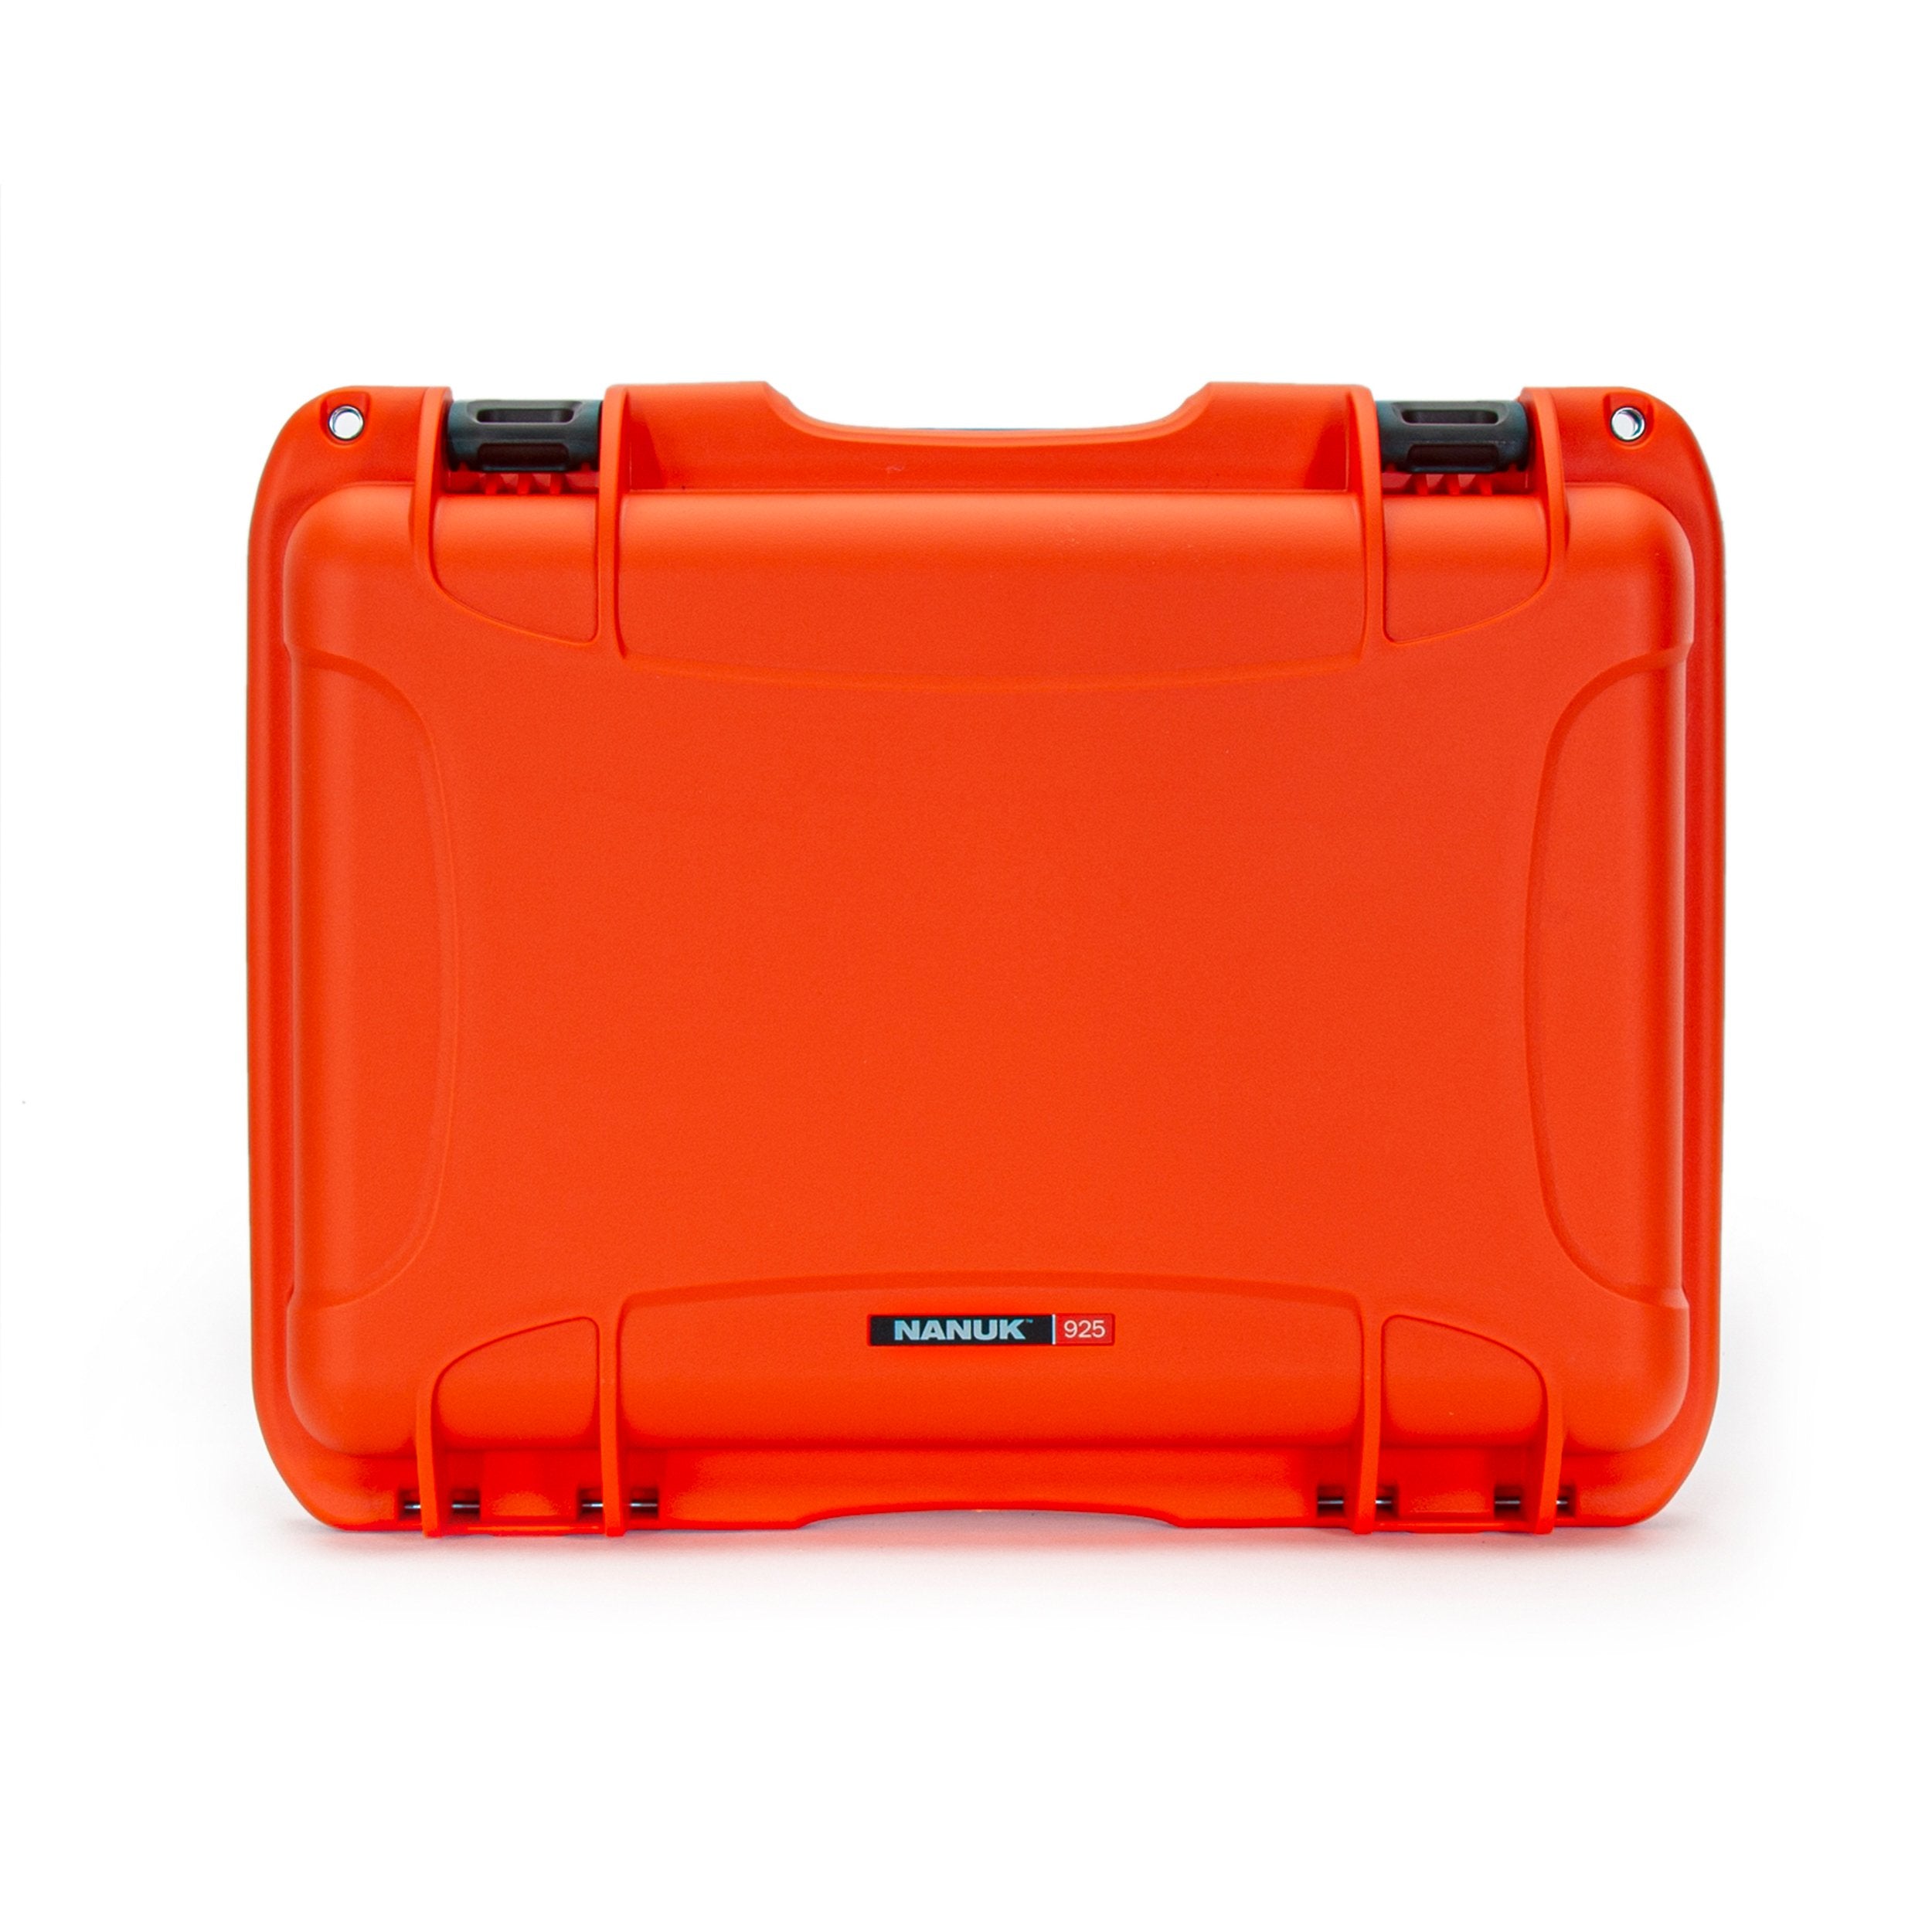 Nanuk 925 Waterproof Hard Case - Orange